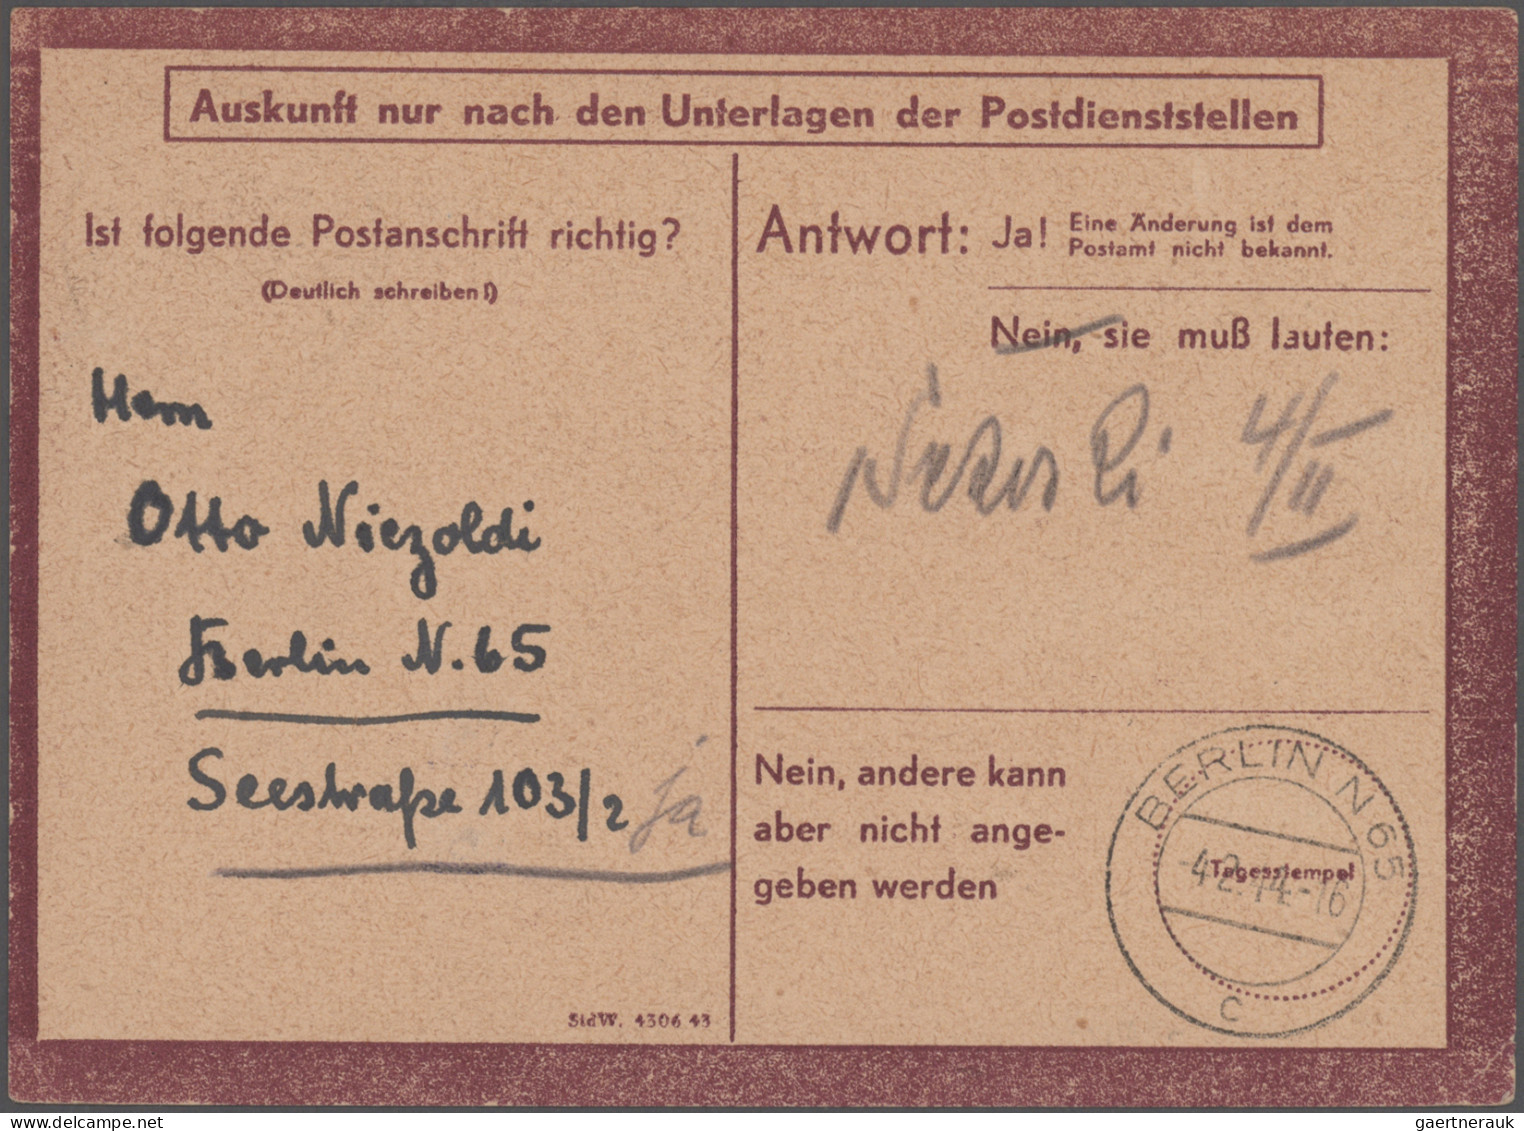 Deutsches Reich: 1872/1945, Partie von ca. 120 Briefen und Karten von Brustschil